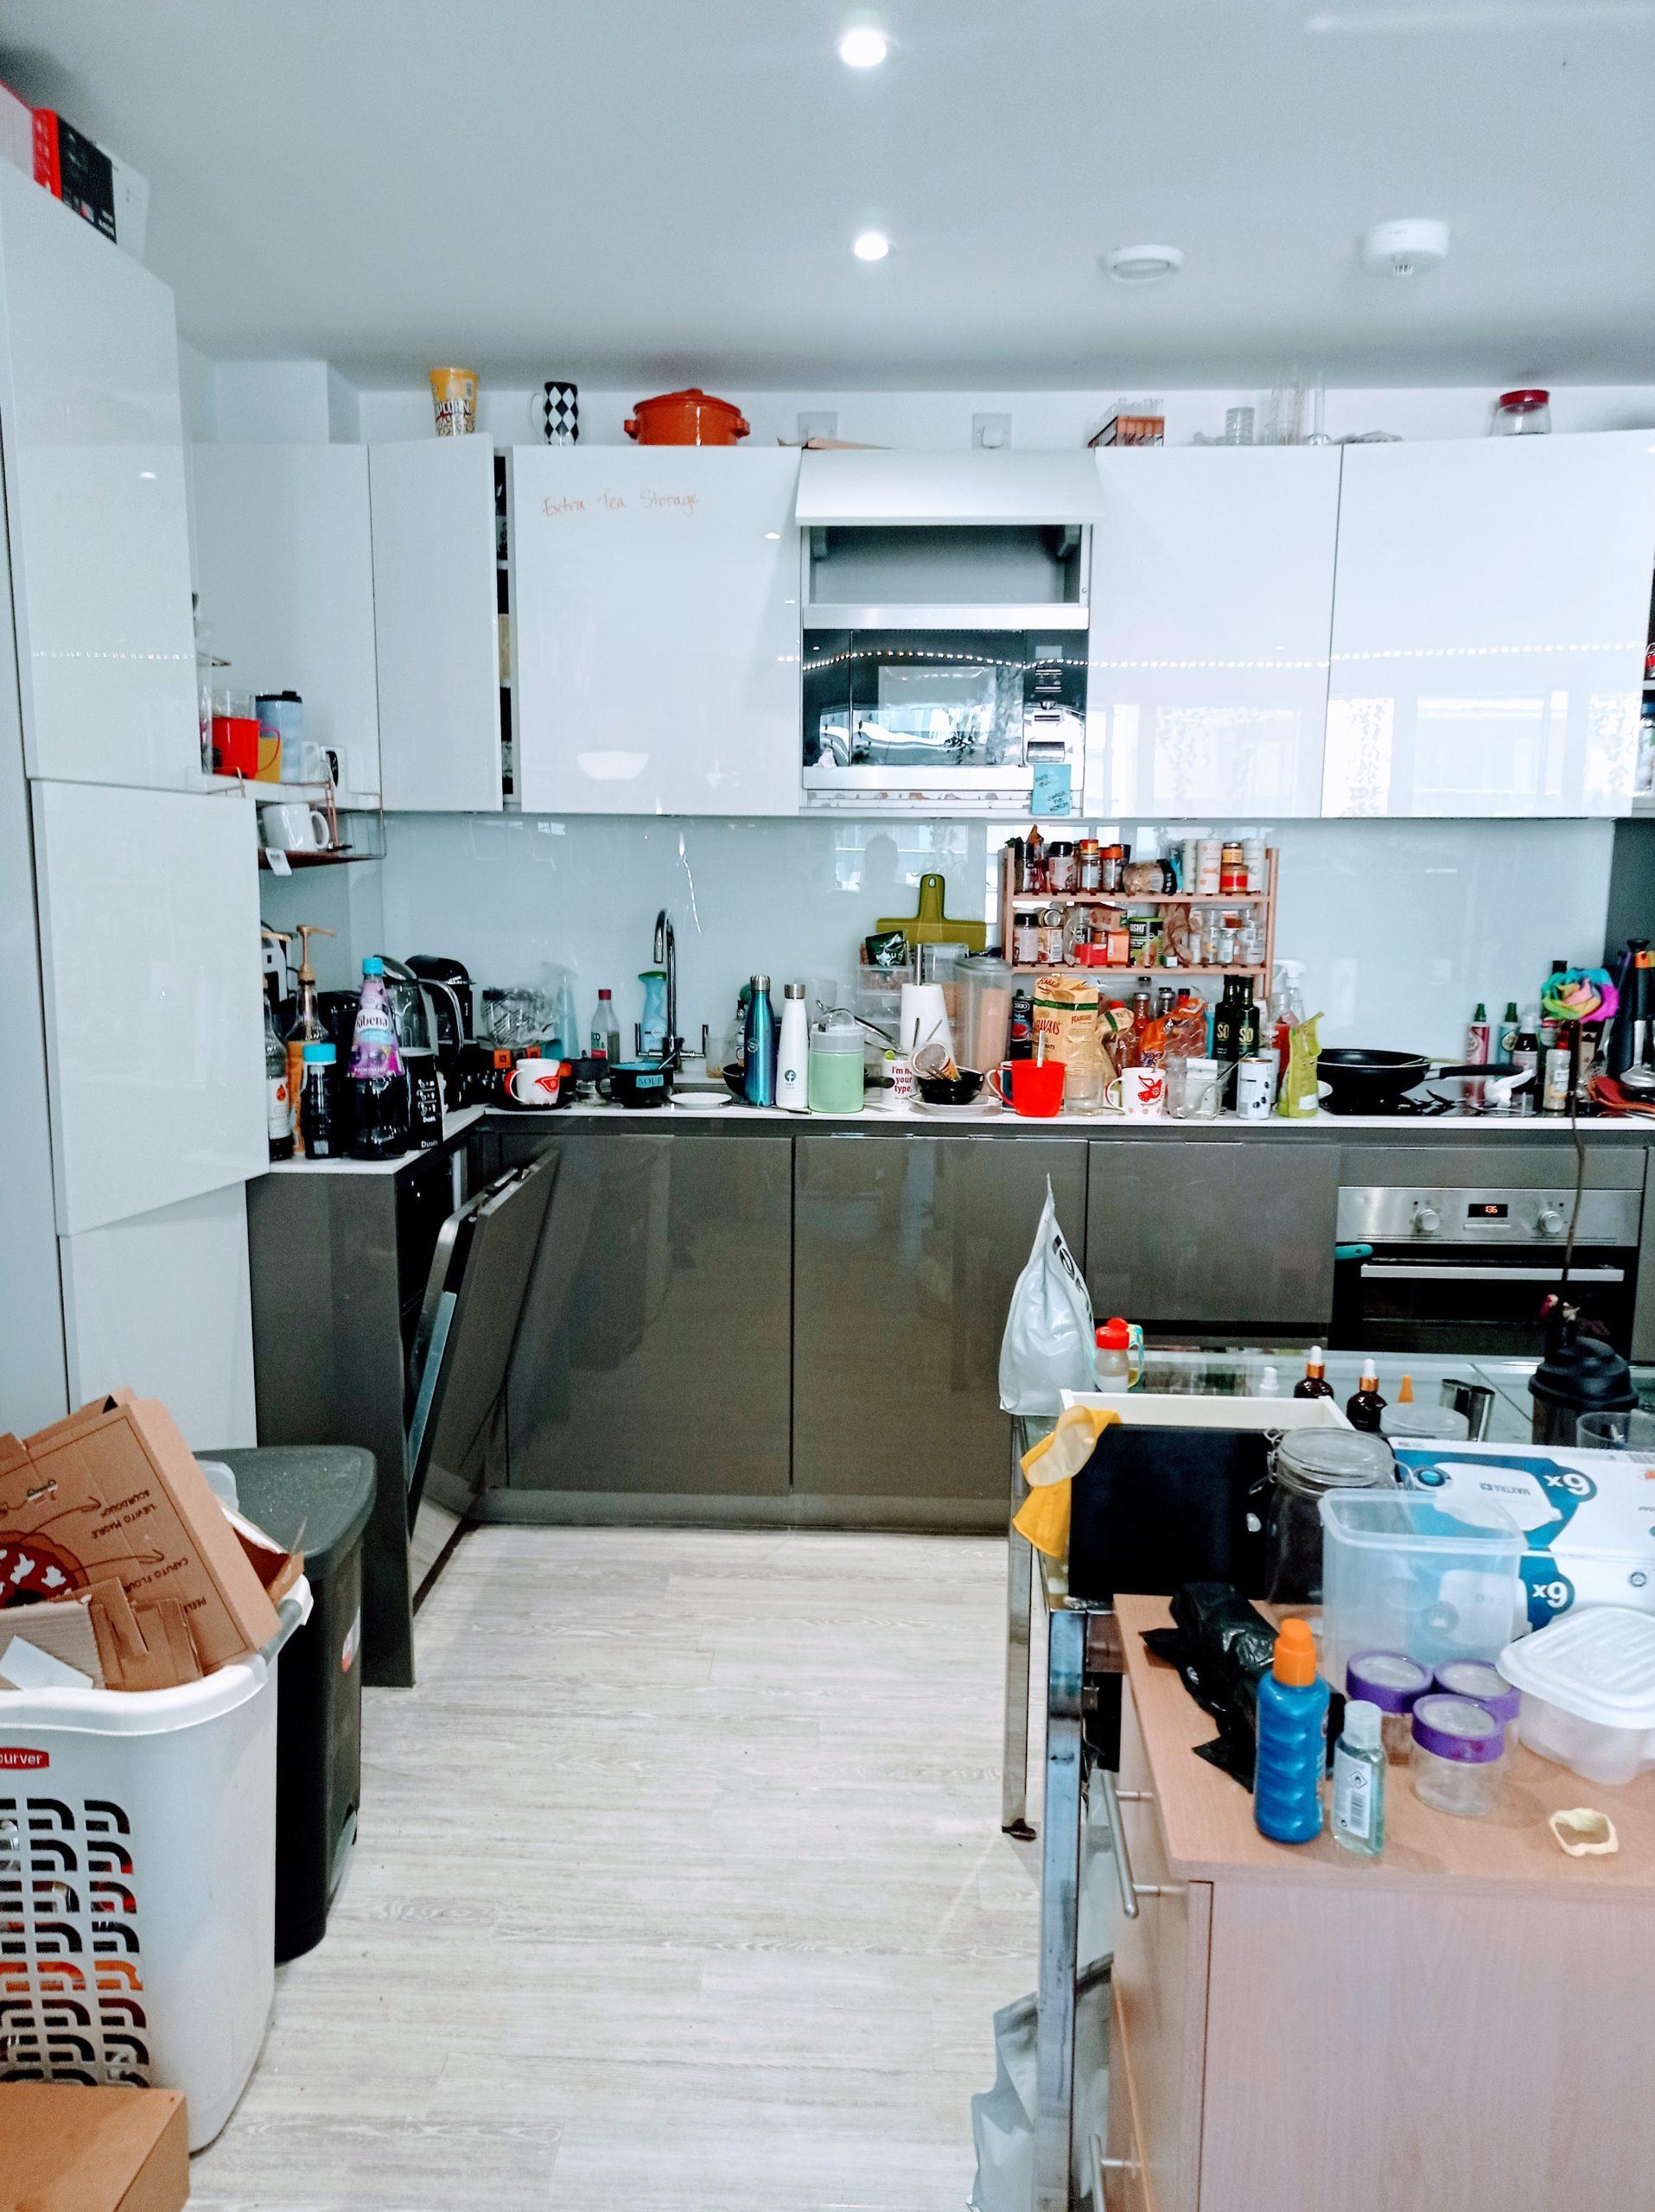 kitchen clutter